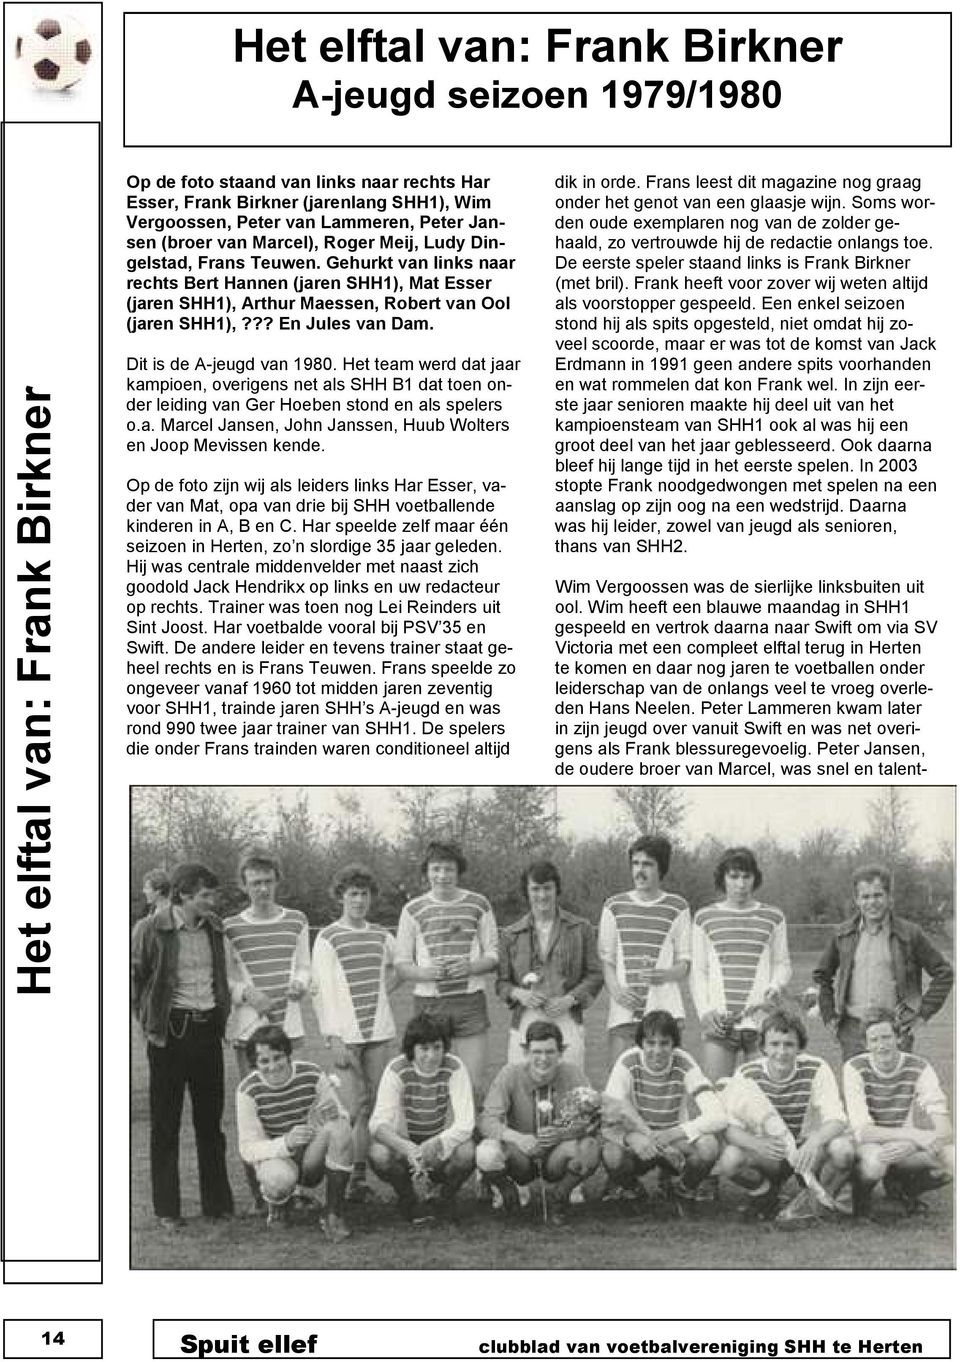 Gehurkt van links naar rechts Bert Hannen (jaren SHH1), Mat Esser (jaren SHH1), Arthur Maessen, Robert van Ool (jaren SHH1),??? En Jules van Dam. Dit is de A-jeugd van 1980.